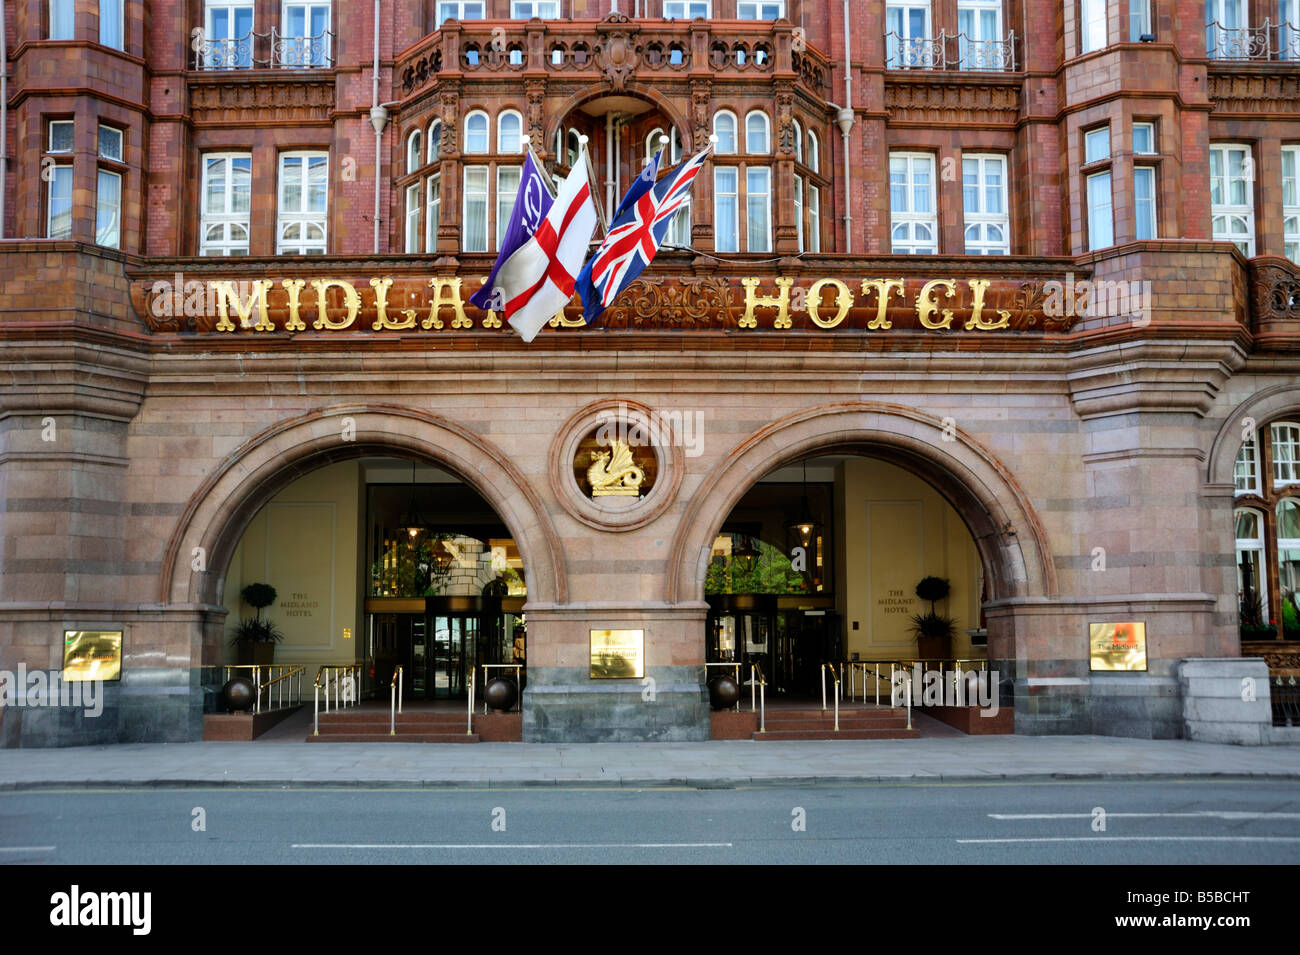 Midland Hotel entrance, Manchester, England, Europe Stock Photo